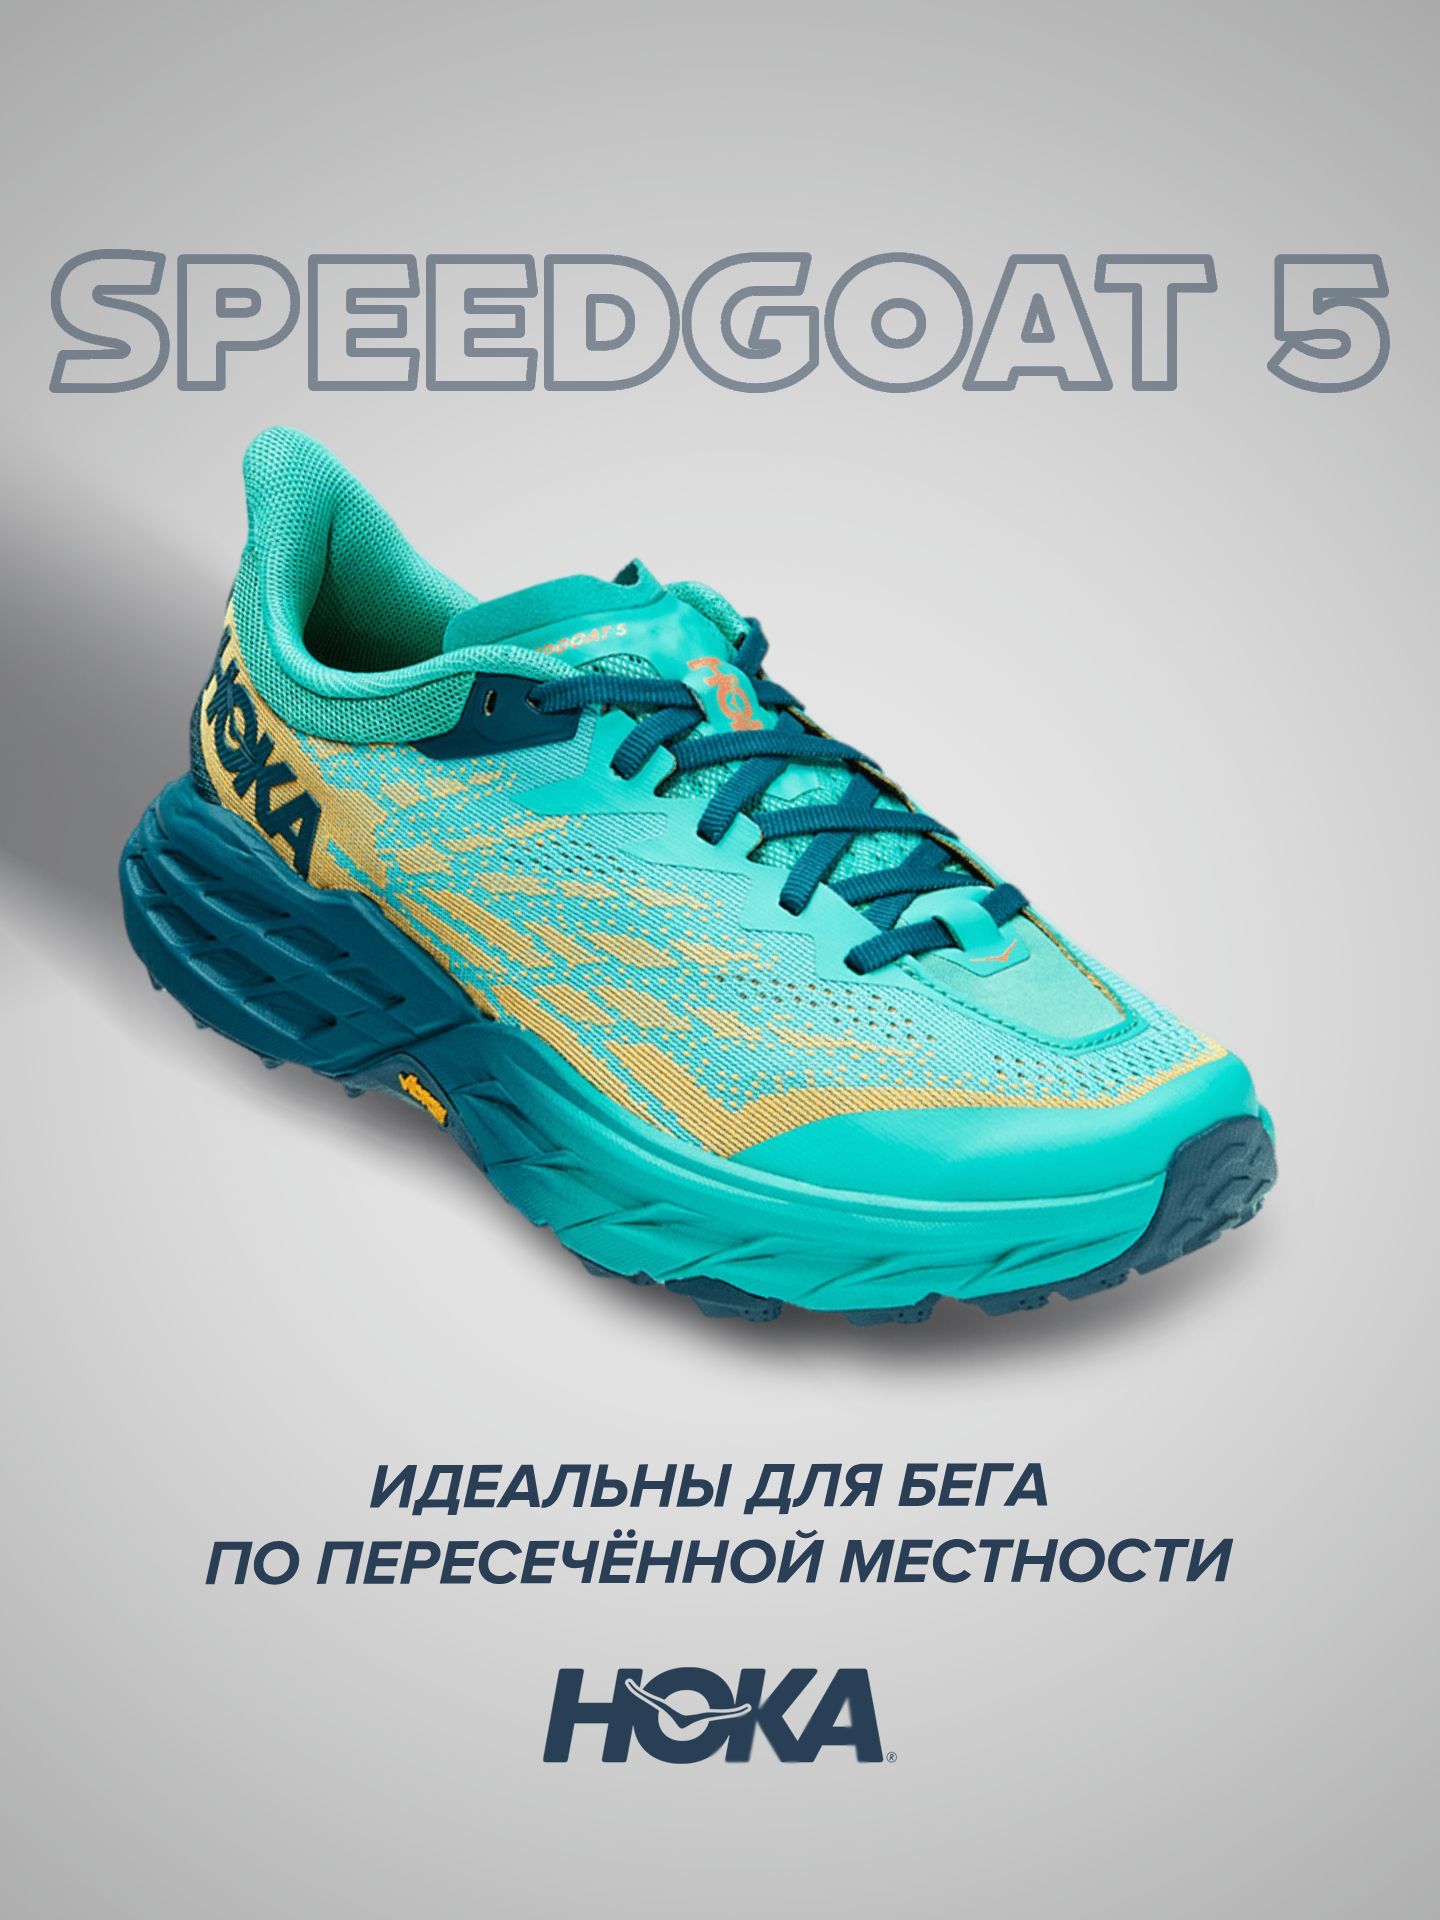 Спортивные кроссовки женские Hoka Speedgoat 5 бирюзовые 5.5 US